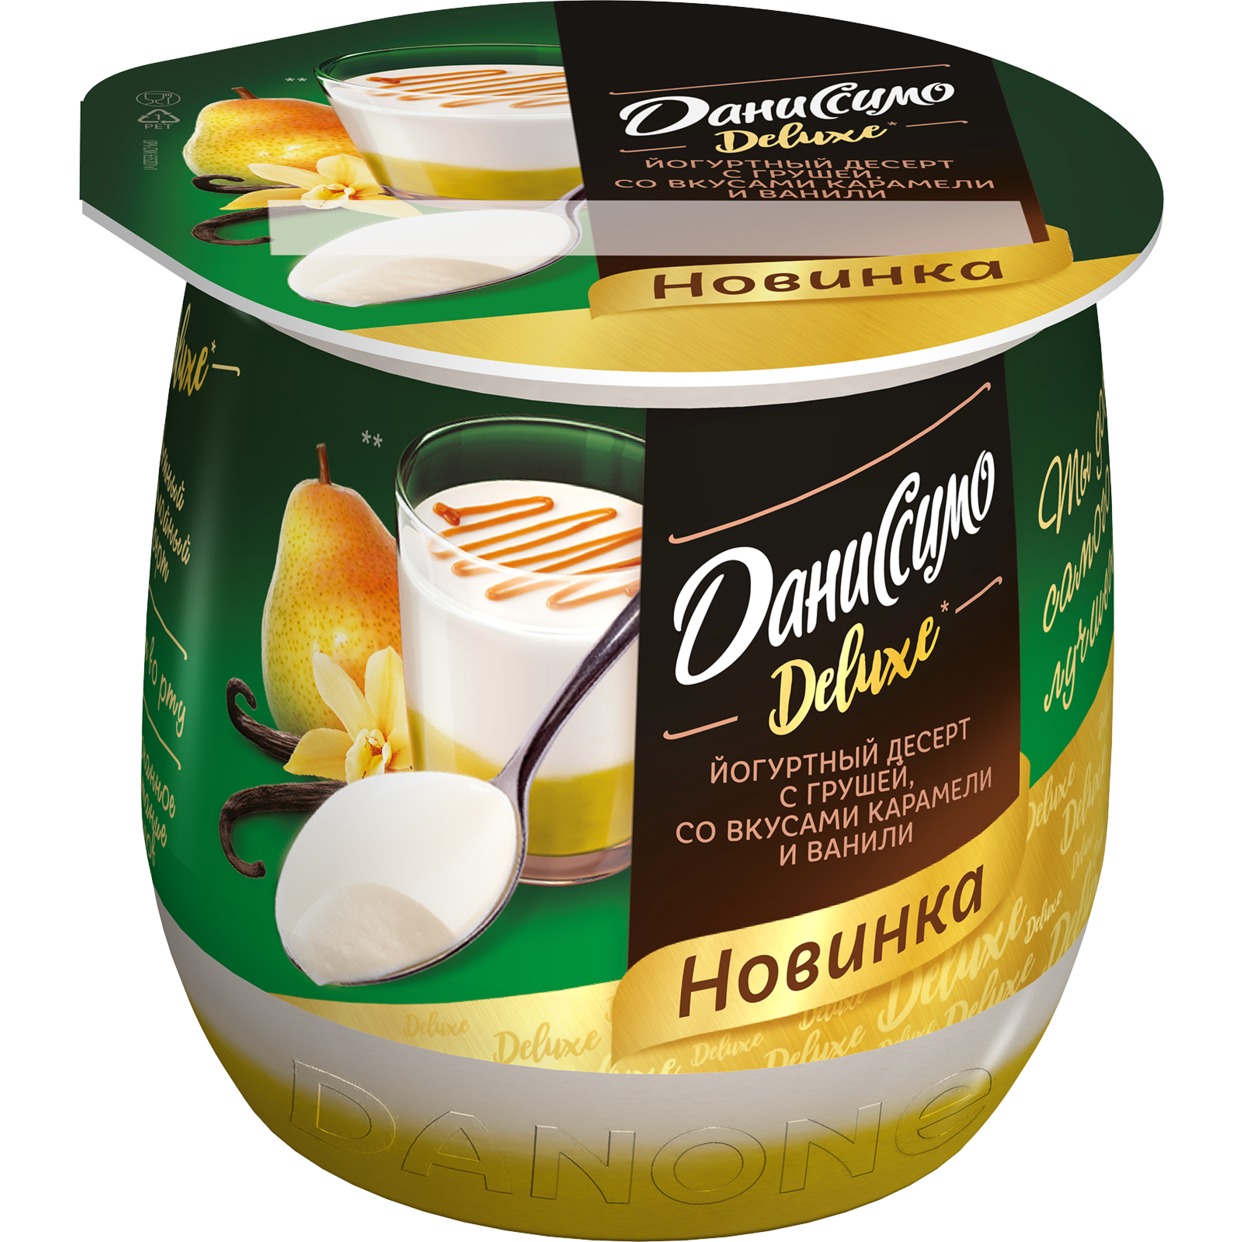 Даниссимо десерт кисломолочный йогуртный термостатный с грушей, со вкусами ванили и карамели «Deluxe Пудинг», 4,2% 160г